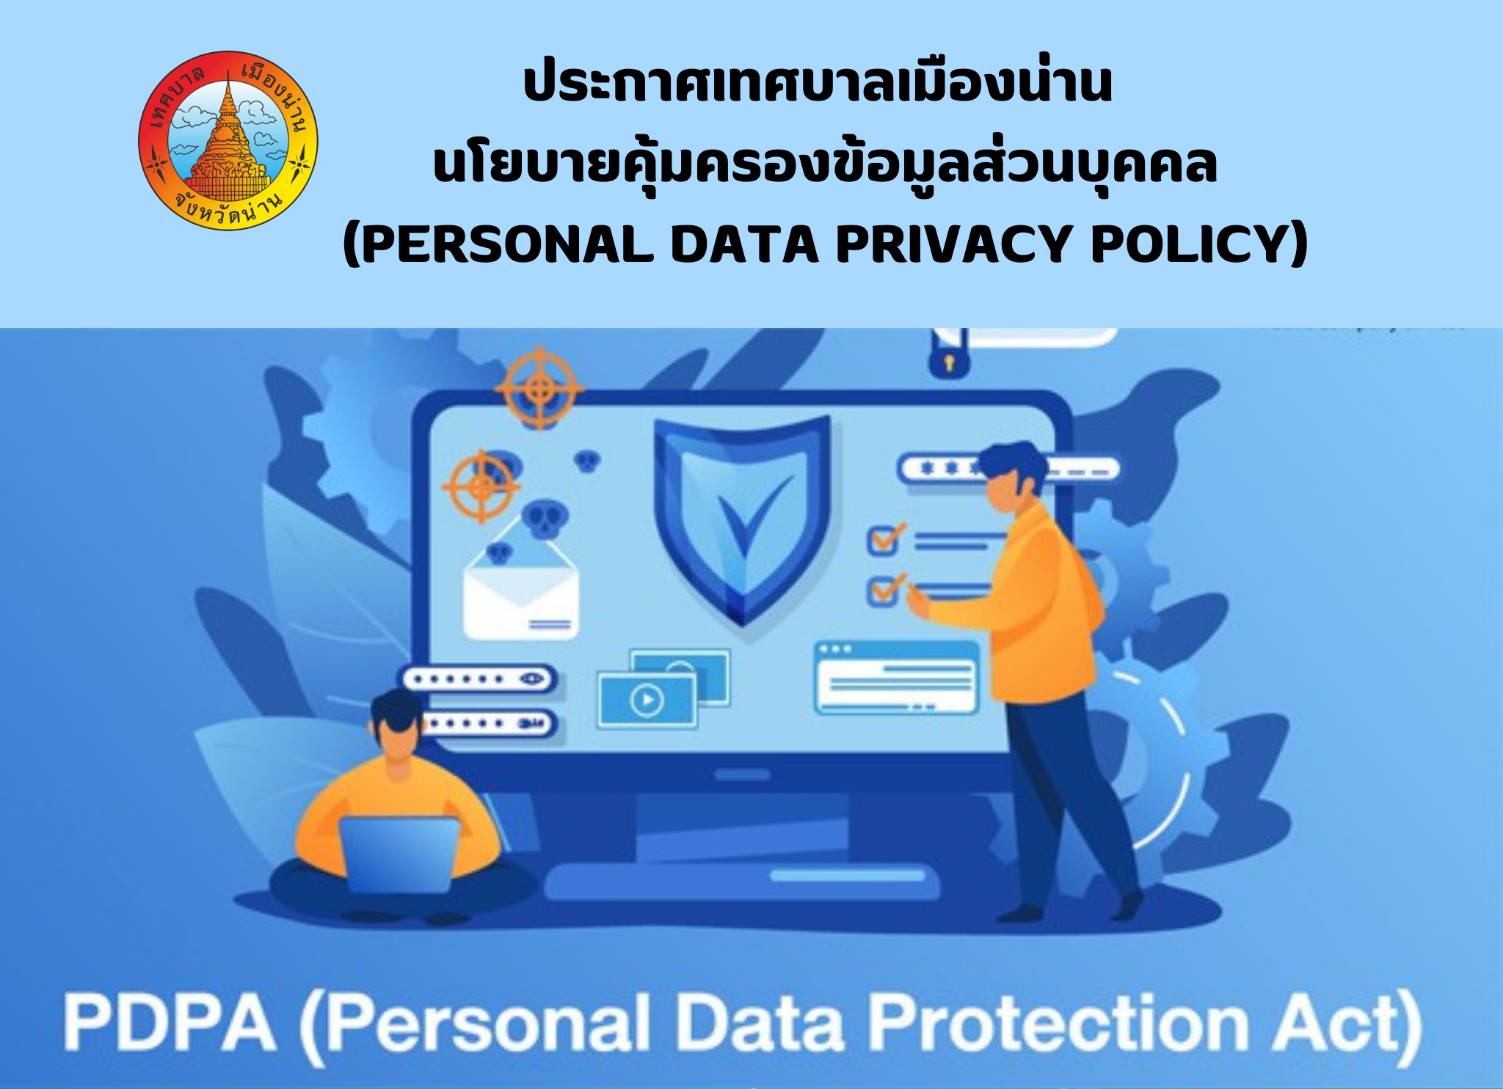 ประกาศเทศบาลเมืองน่าน นโยบายคุ้มครองข้อมูลส่วนบุคคล(Personal Data Privacy Policy)